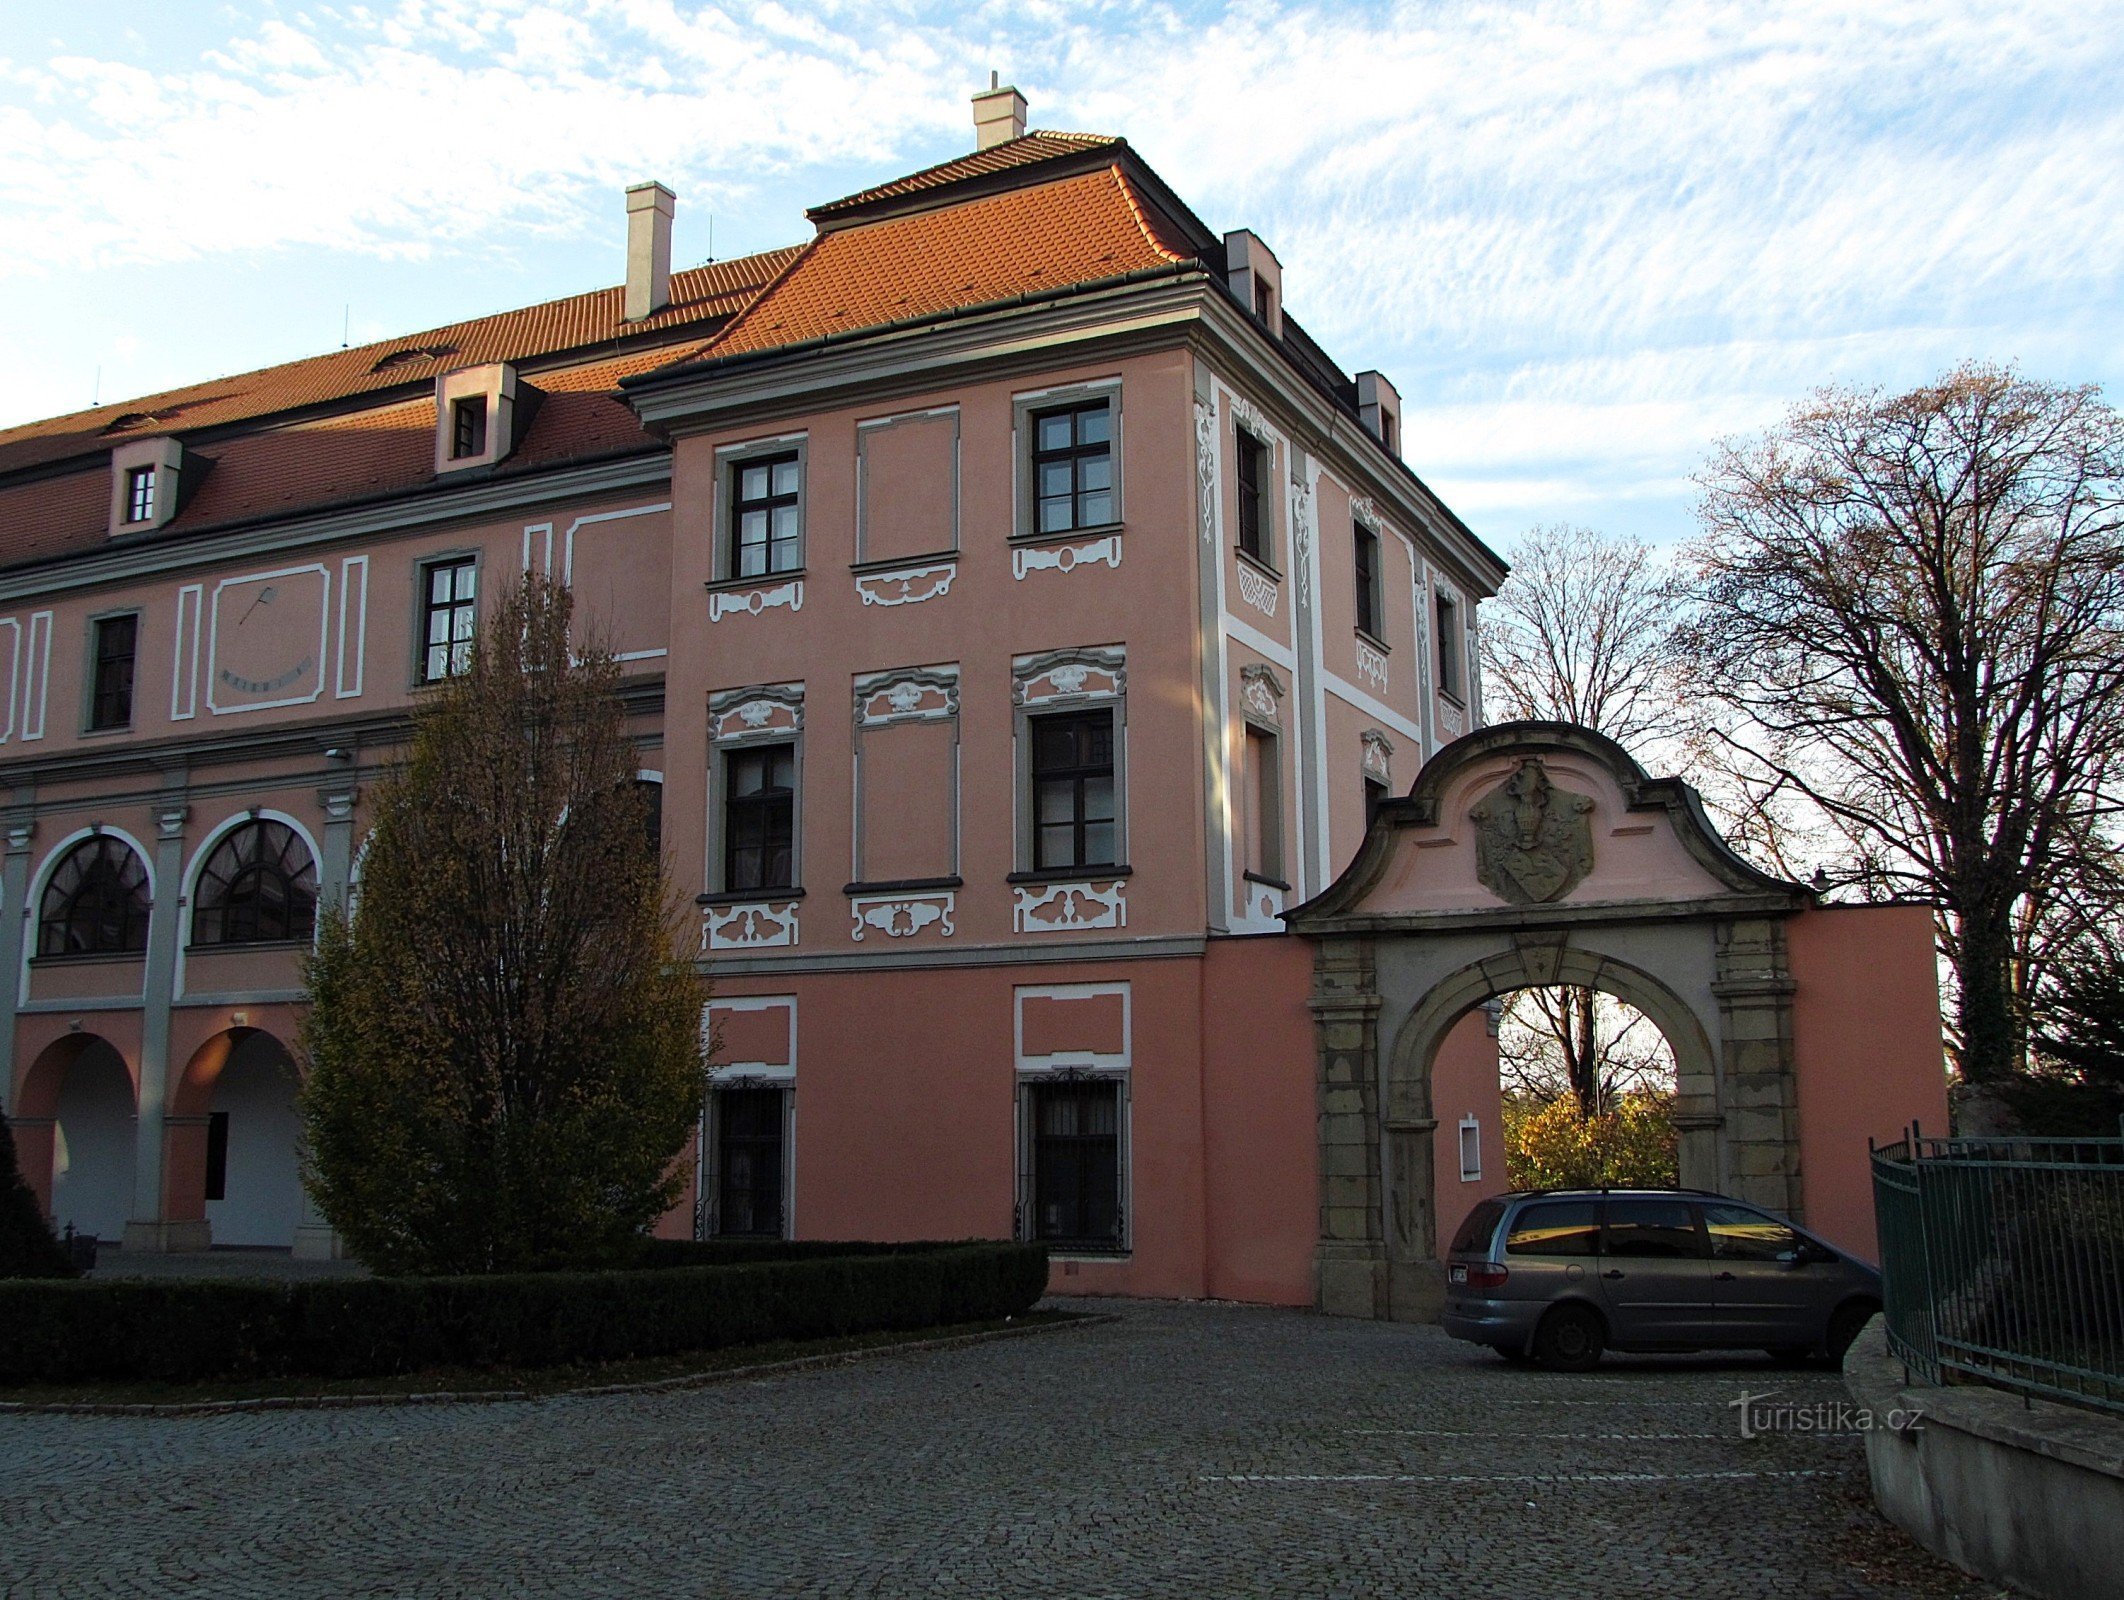 Valašské Meziříčí - Žerotín slott i stadens centrum